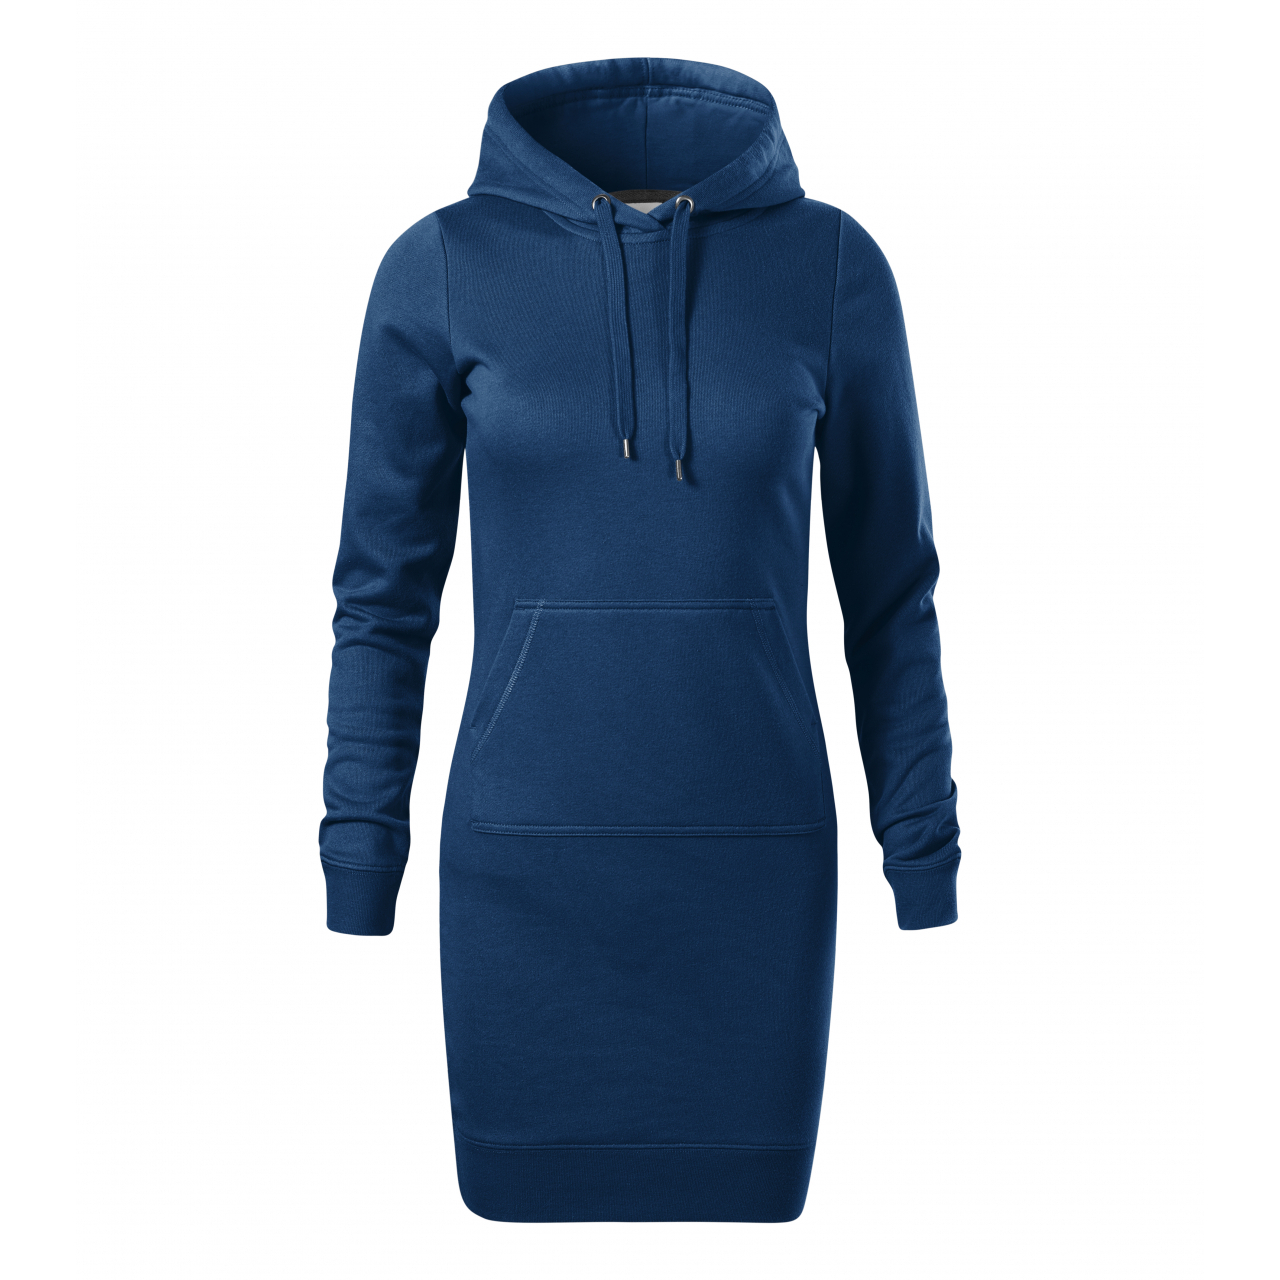 Šaty dámské Malfini Snap - tmavě modré, XXL